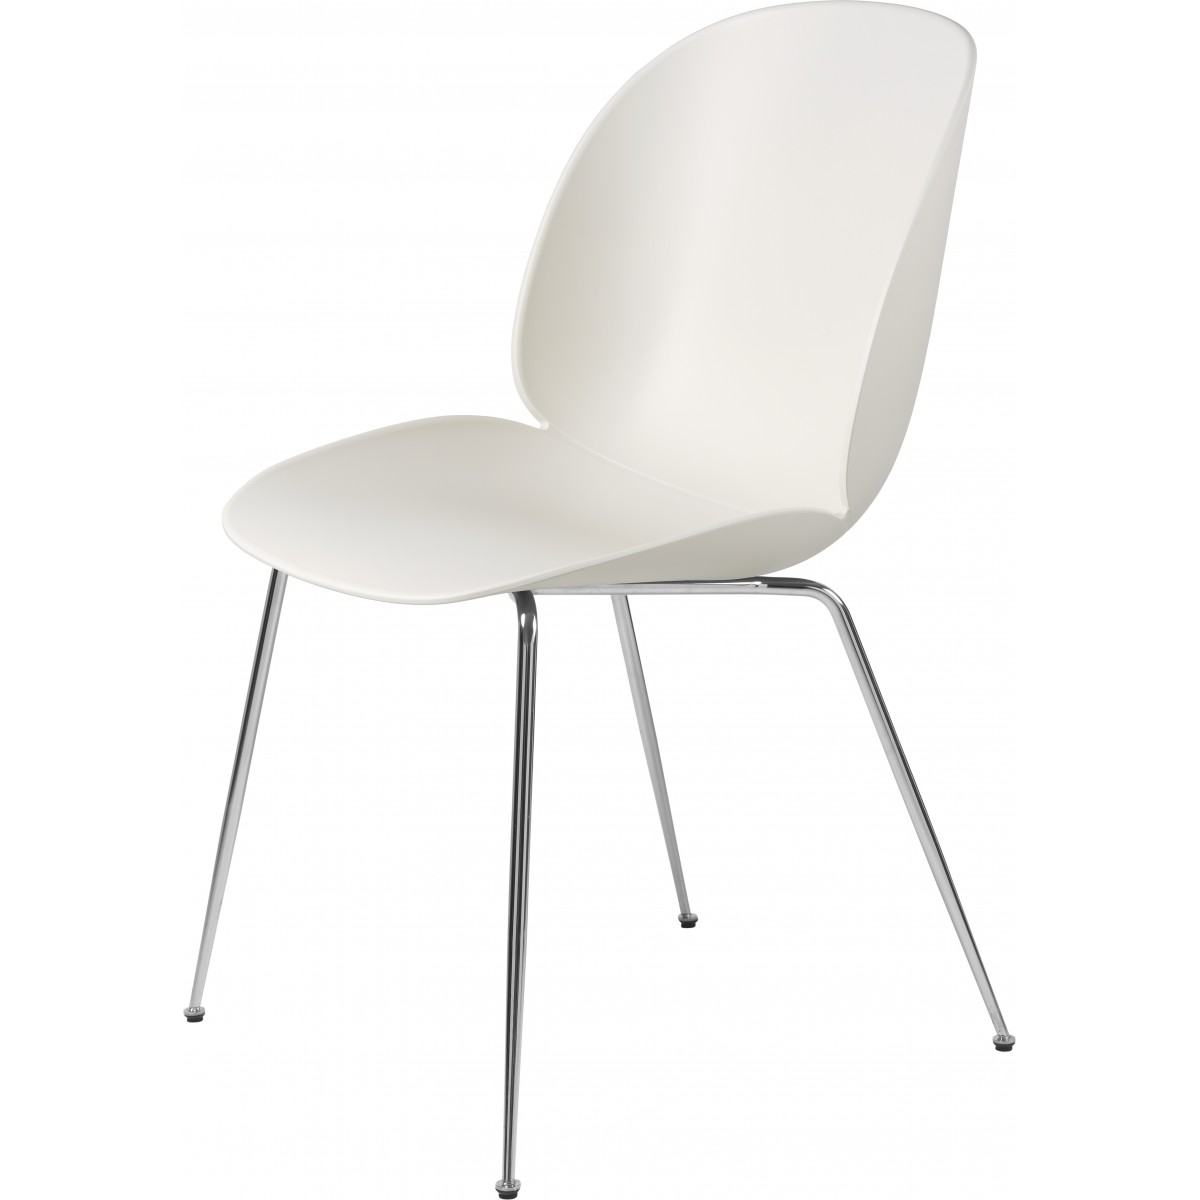 Coque blanc Alabaster - base chrome - chaise Beetle plastique